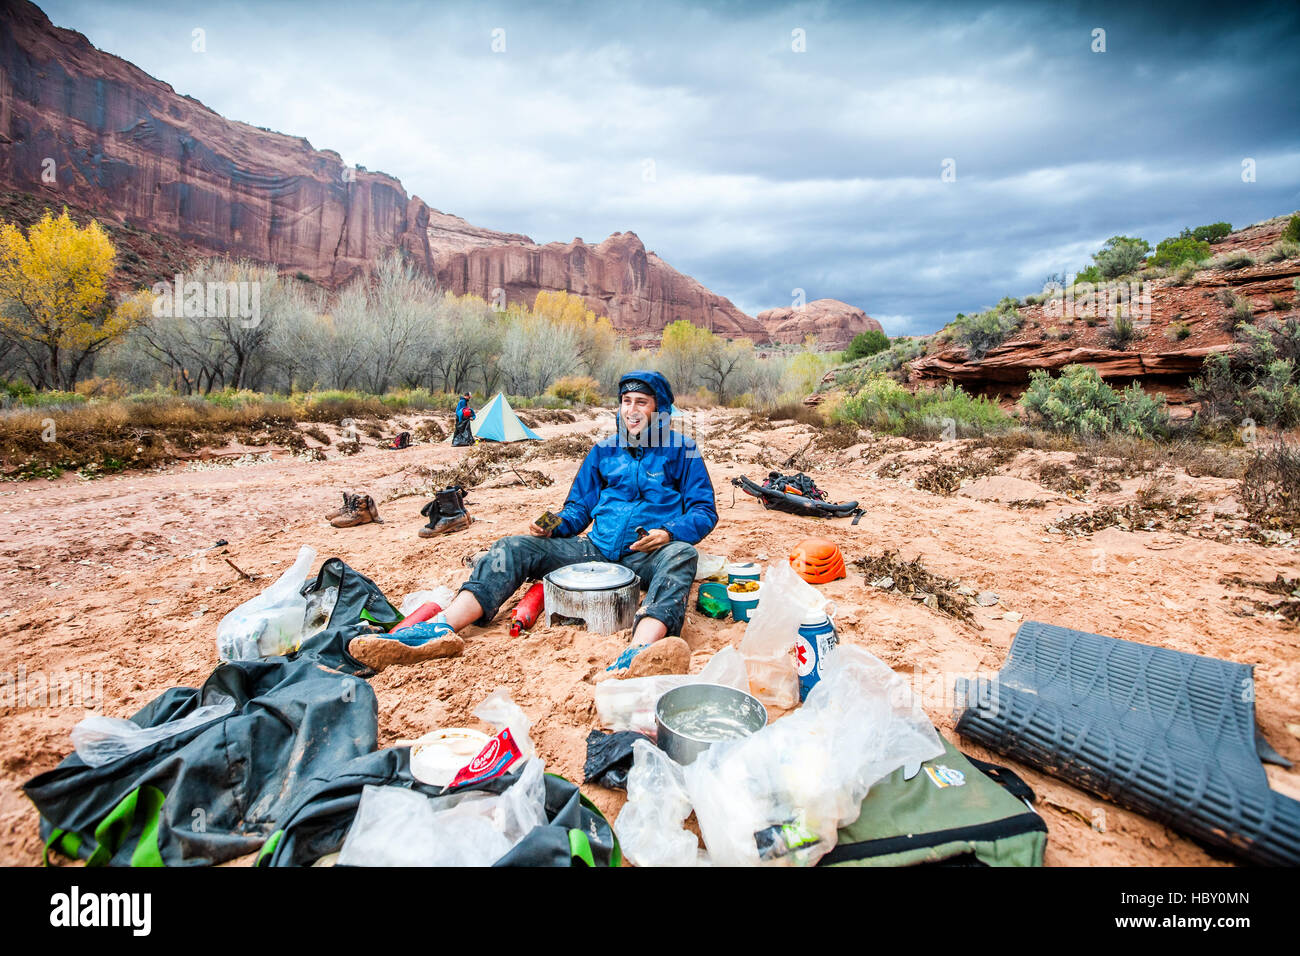 Un jeune homme camping dans un lavage à sec, cuire le dîner sous un orage dans les canyons de l'Utah Banque D'Images